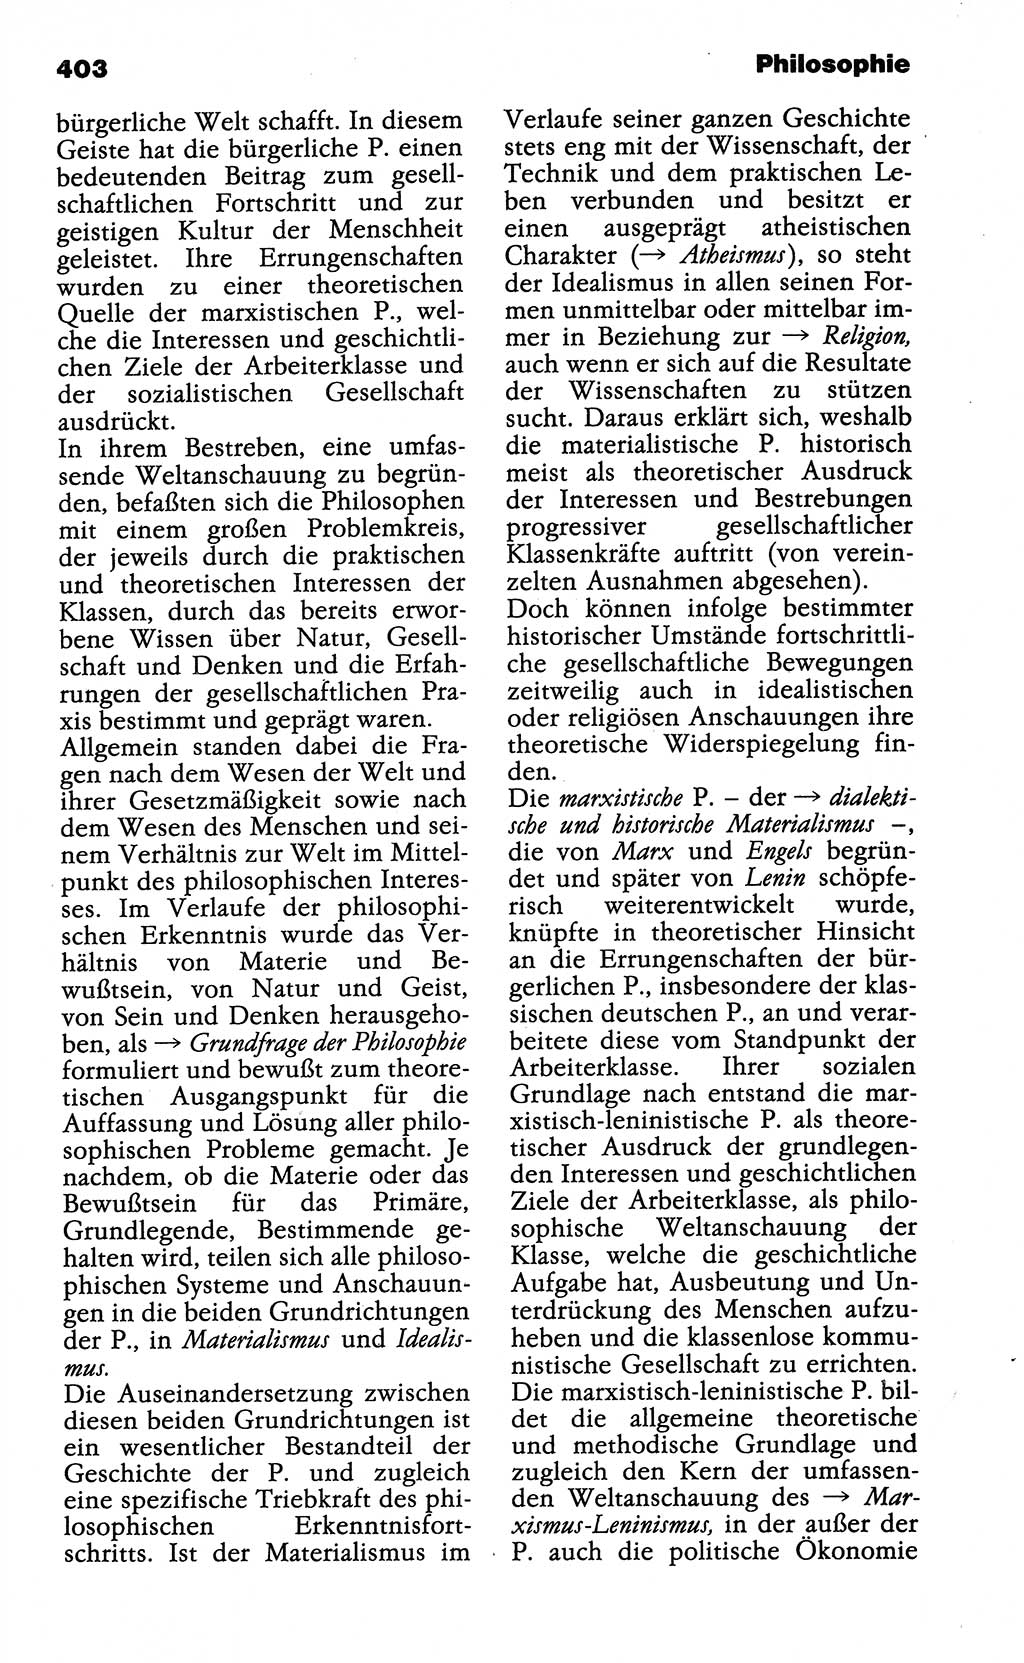 Wörterbuch der marxistisch-leninistischen Philosophie [Deutsche Demokratische Republik (DDR)] 1985, Seite 403 (Wb. ML Phil. DDR 1985, S. 403)